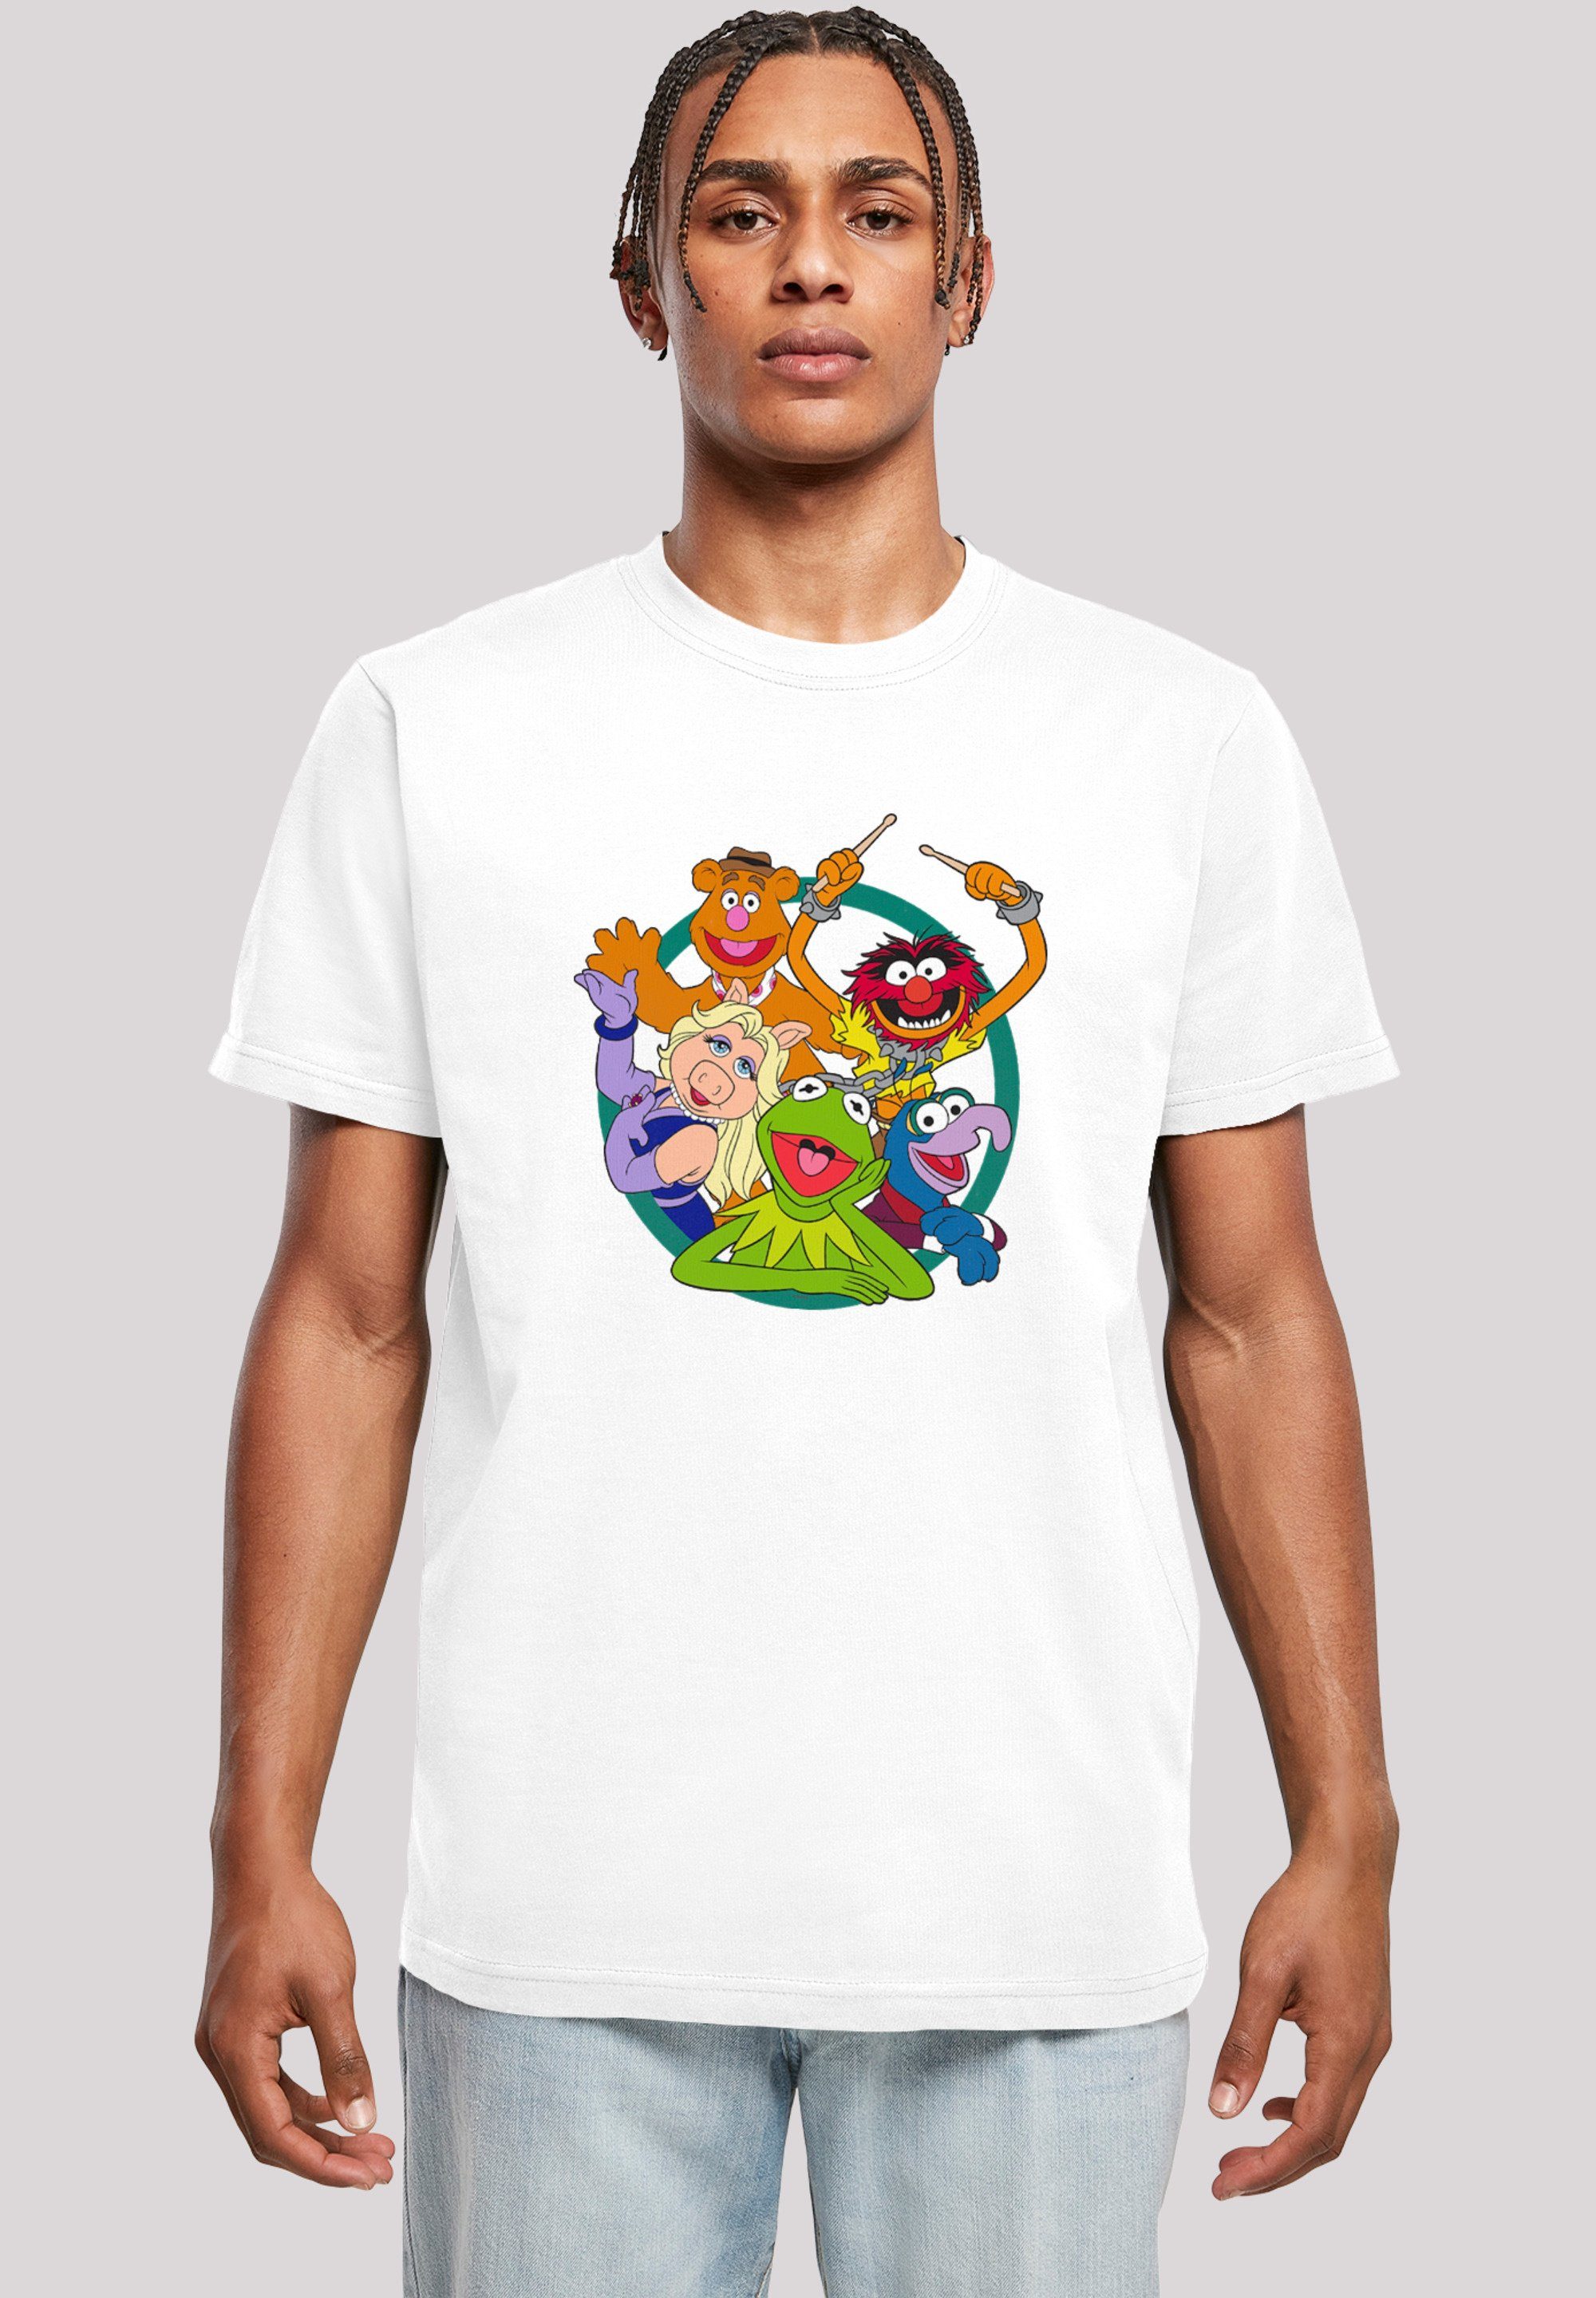 Circle Group T-Shirt Disney Merch,Regular-Fit,Basic,Bedruckt, Sehr Baumwollstoff Tragekomfort F4NT4STIC weicher mit Muppets hohem Herren,Premium